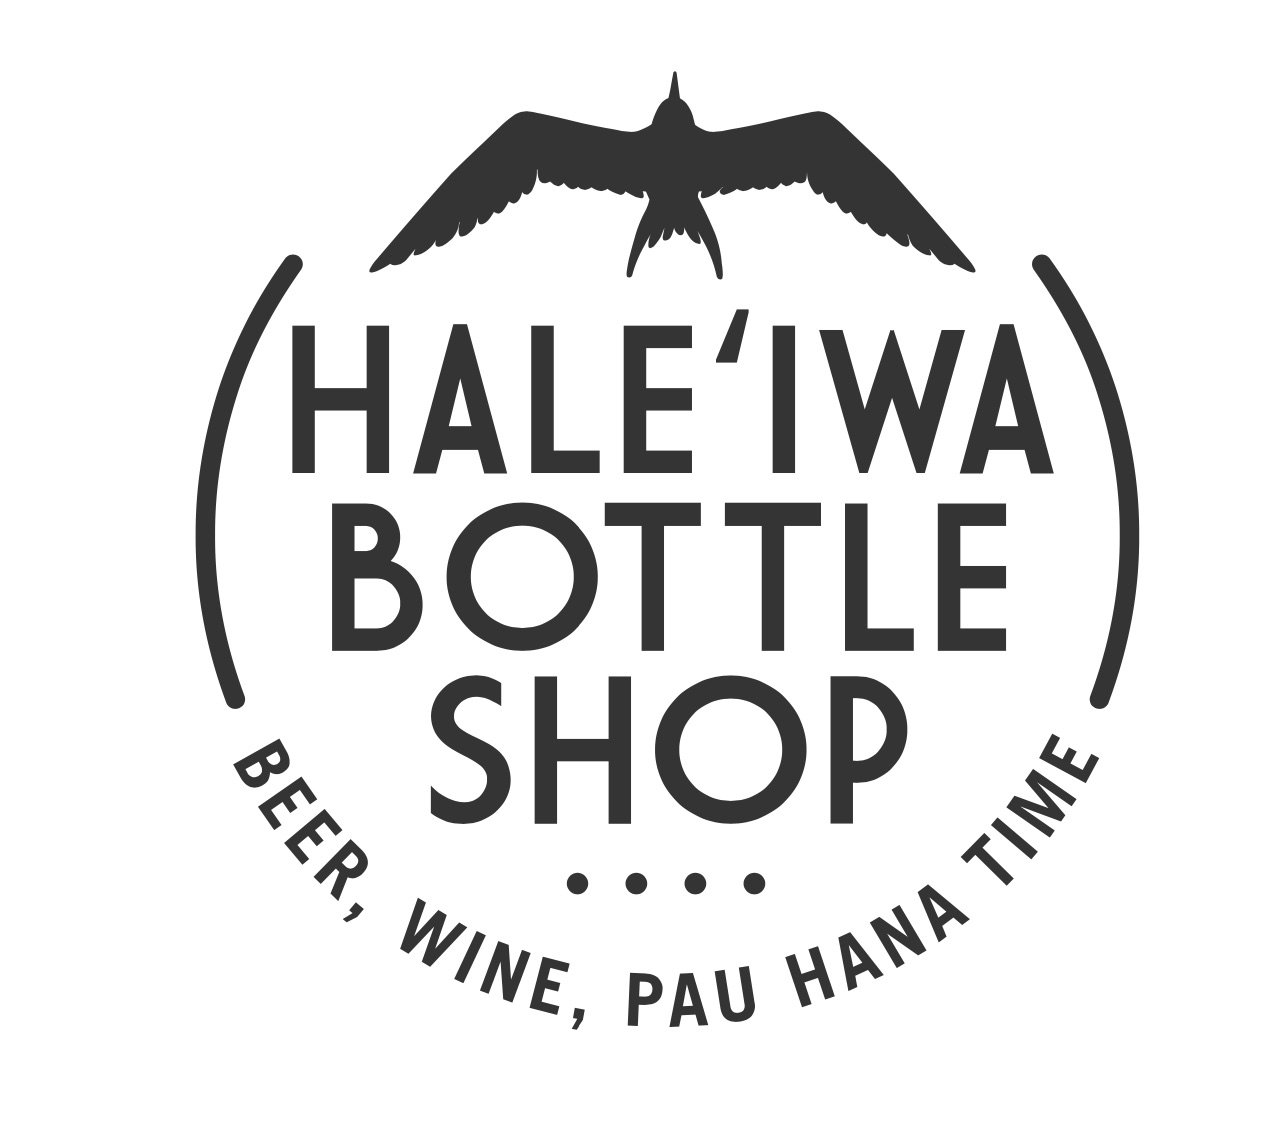 Haleiwa Bottle Shop